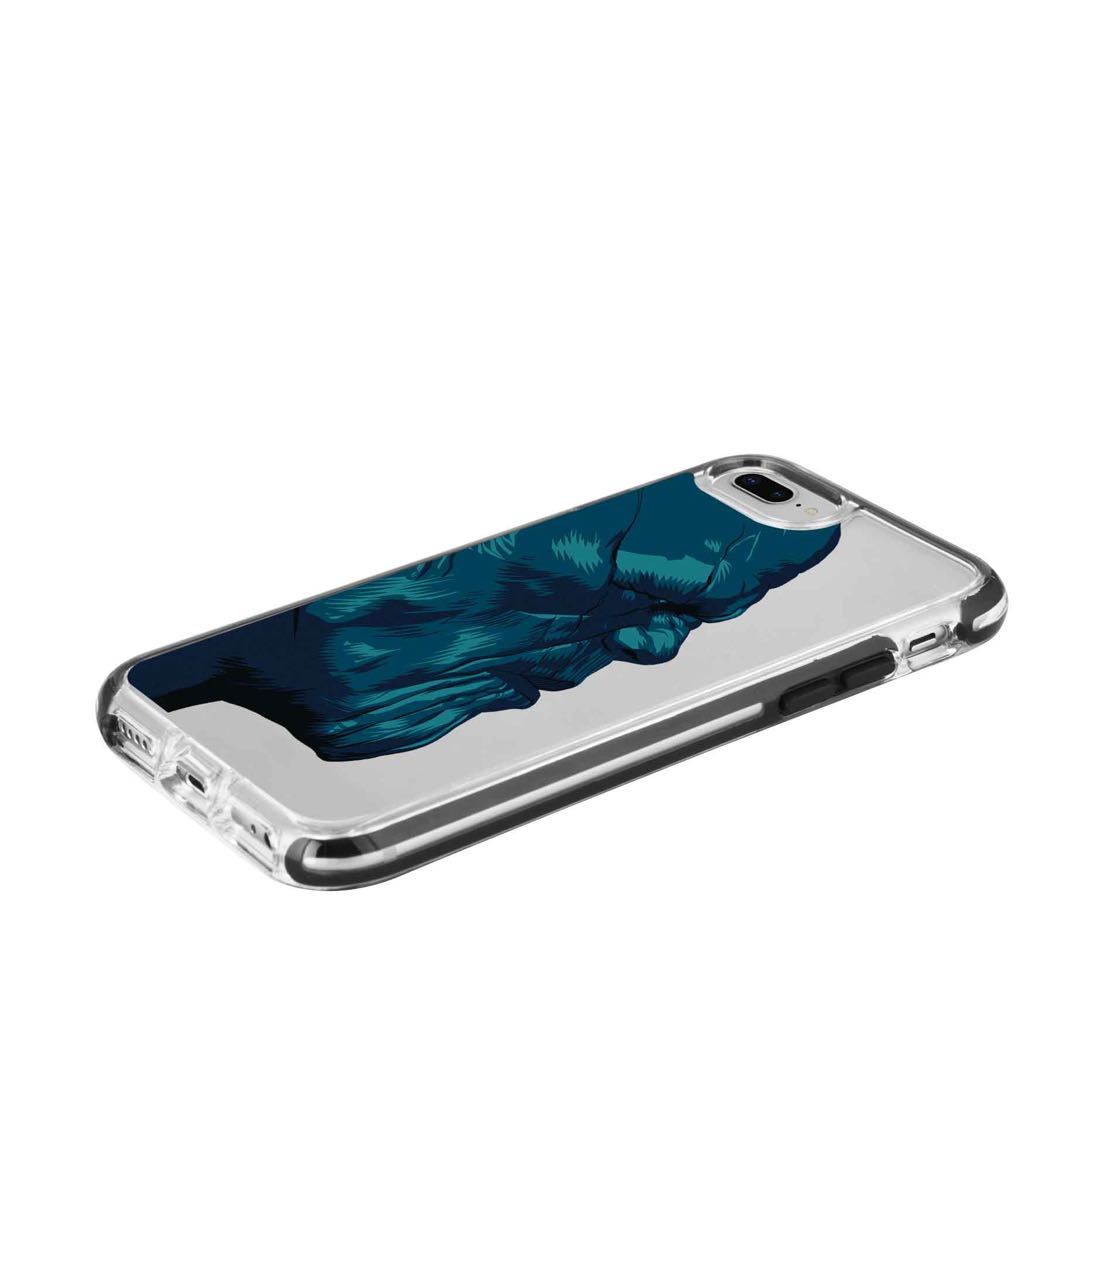 Illuminated Thanos - Extreme Phone Case for iPhone 8 Plus